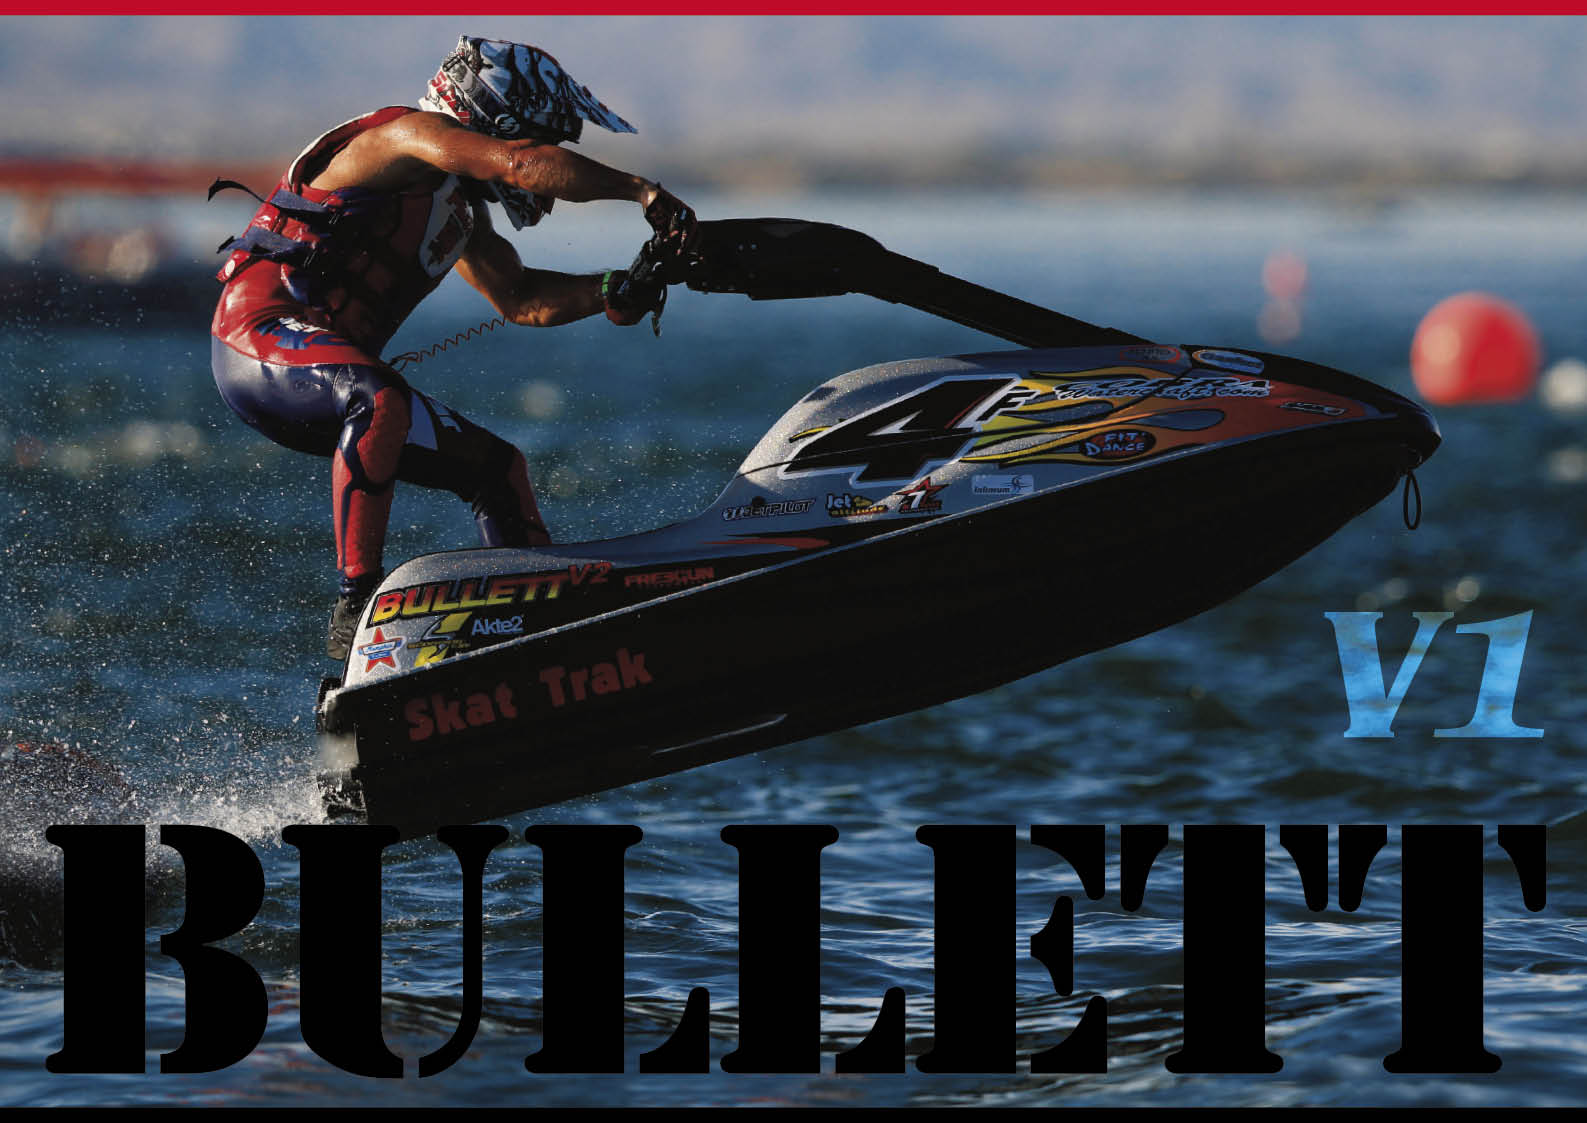 世界的 メジャー レースマシンブランド ブレットレーシング Bullett Racingとは ジェットスキー 水上バイク ワールドジェットスポーツマガジン